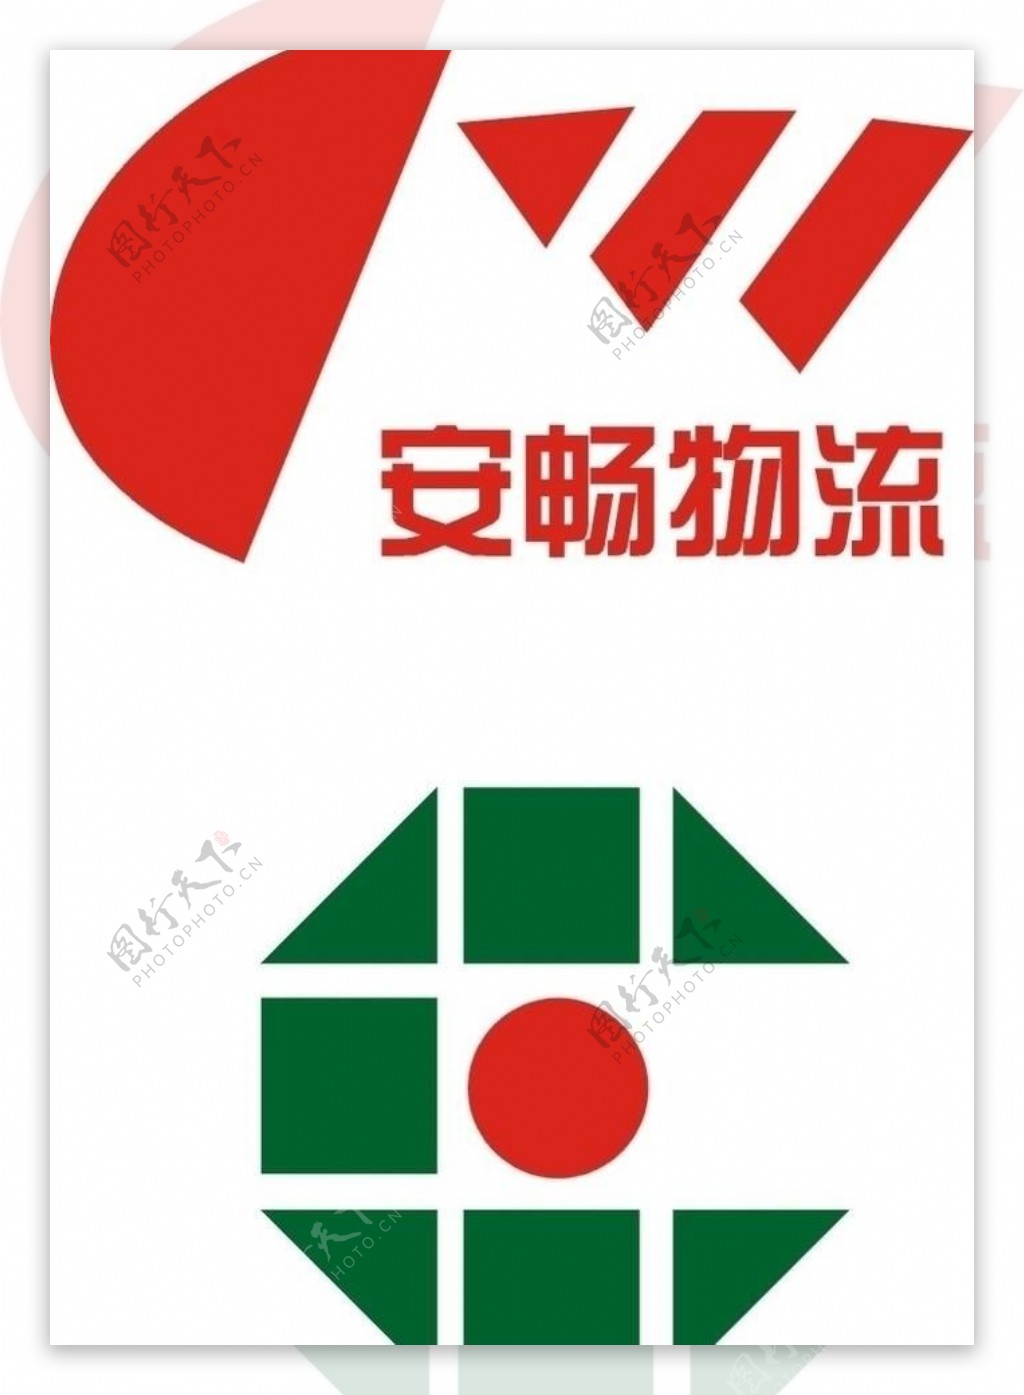 安畅物流logo图片